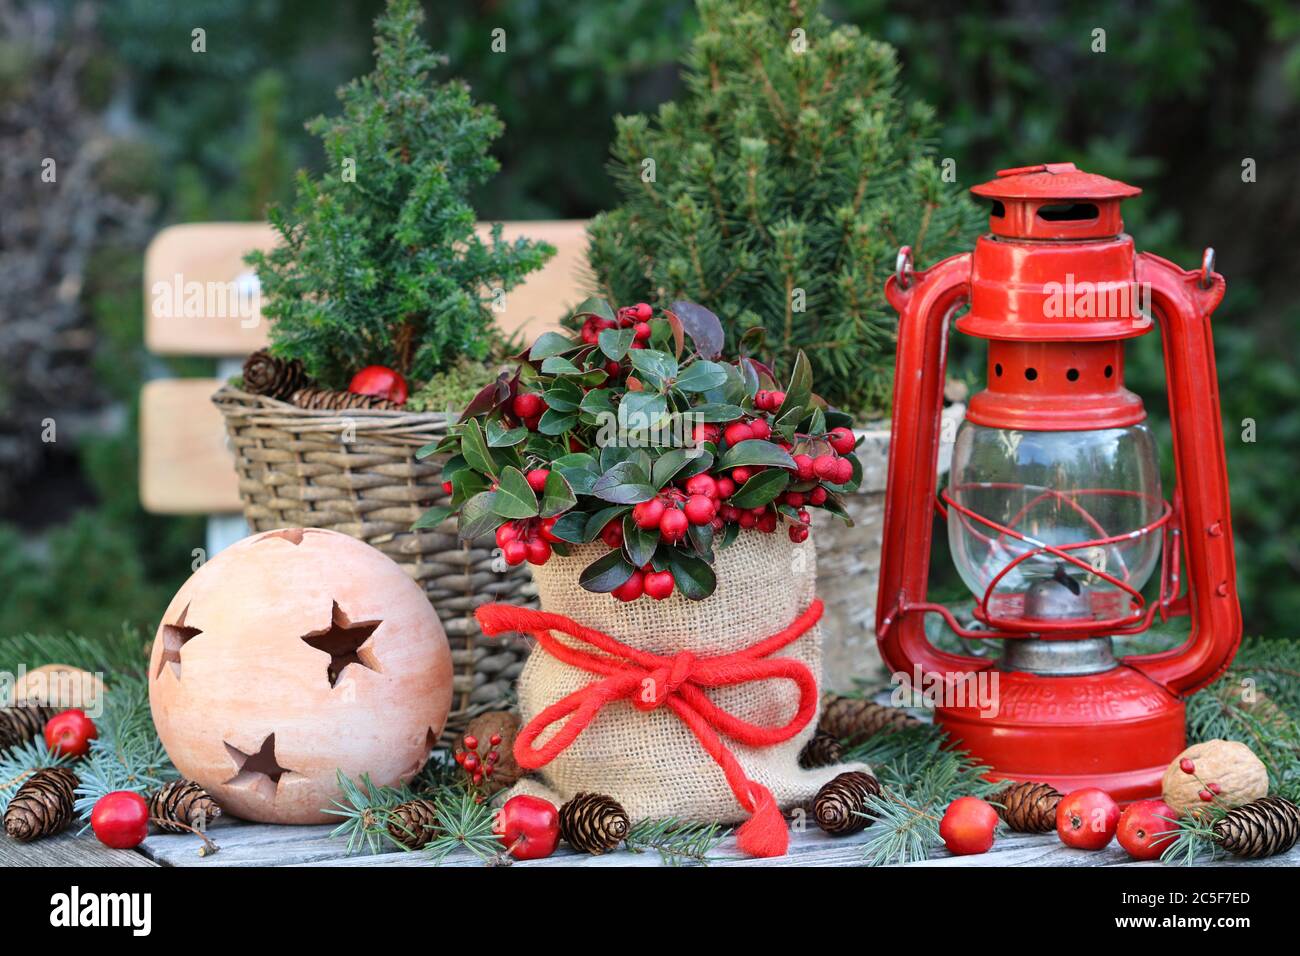 decorazione di natale con lanterna rossa, gaulteria procumbens e conifere Foto Stock